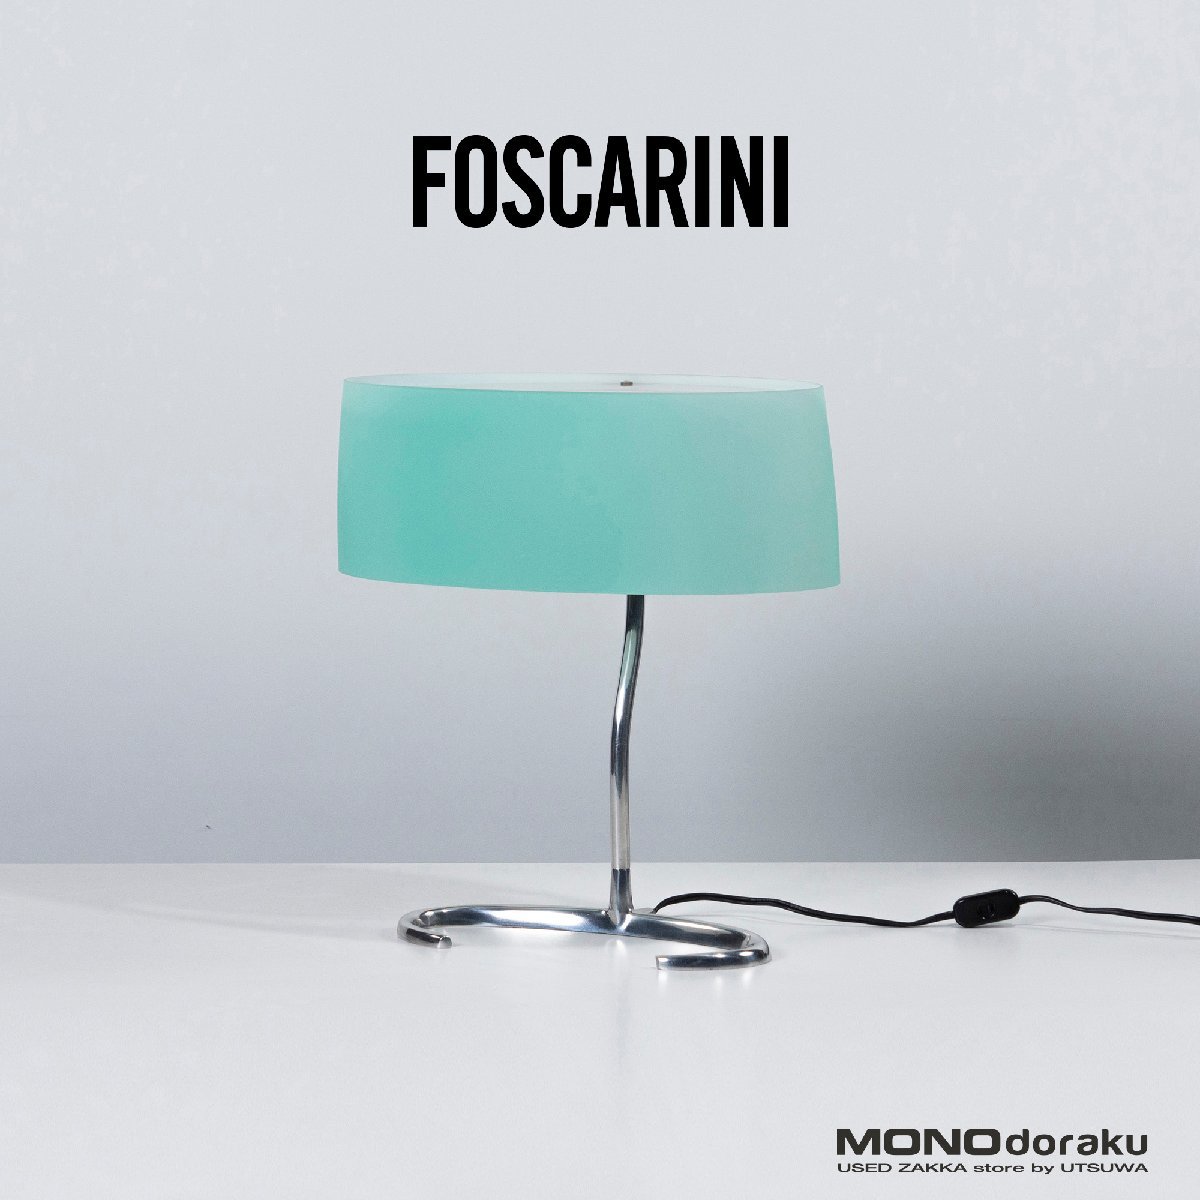 フォスカリーニ テーブルランプ ESA FOSCARINI イタリア製 モダン ヴェネチアンガラス ムラーノガラス 間接照明 デスクランプ